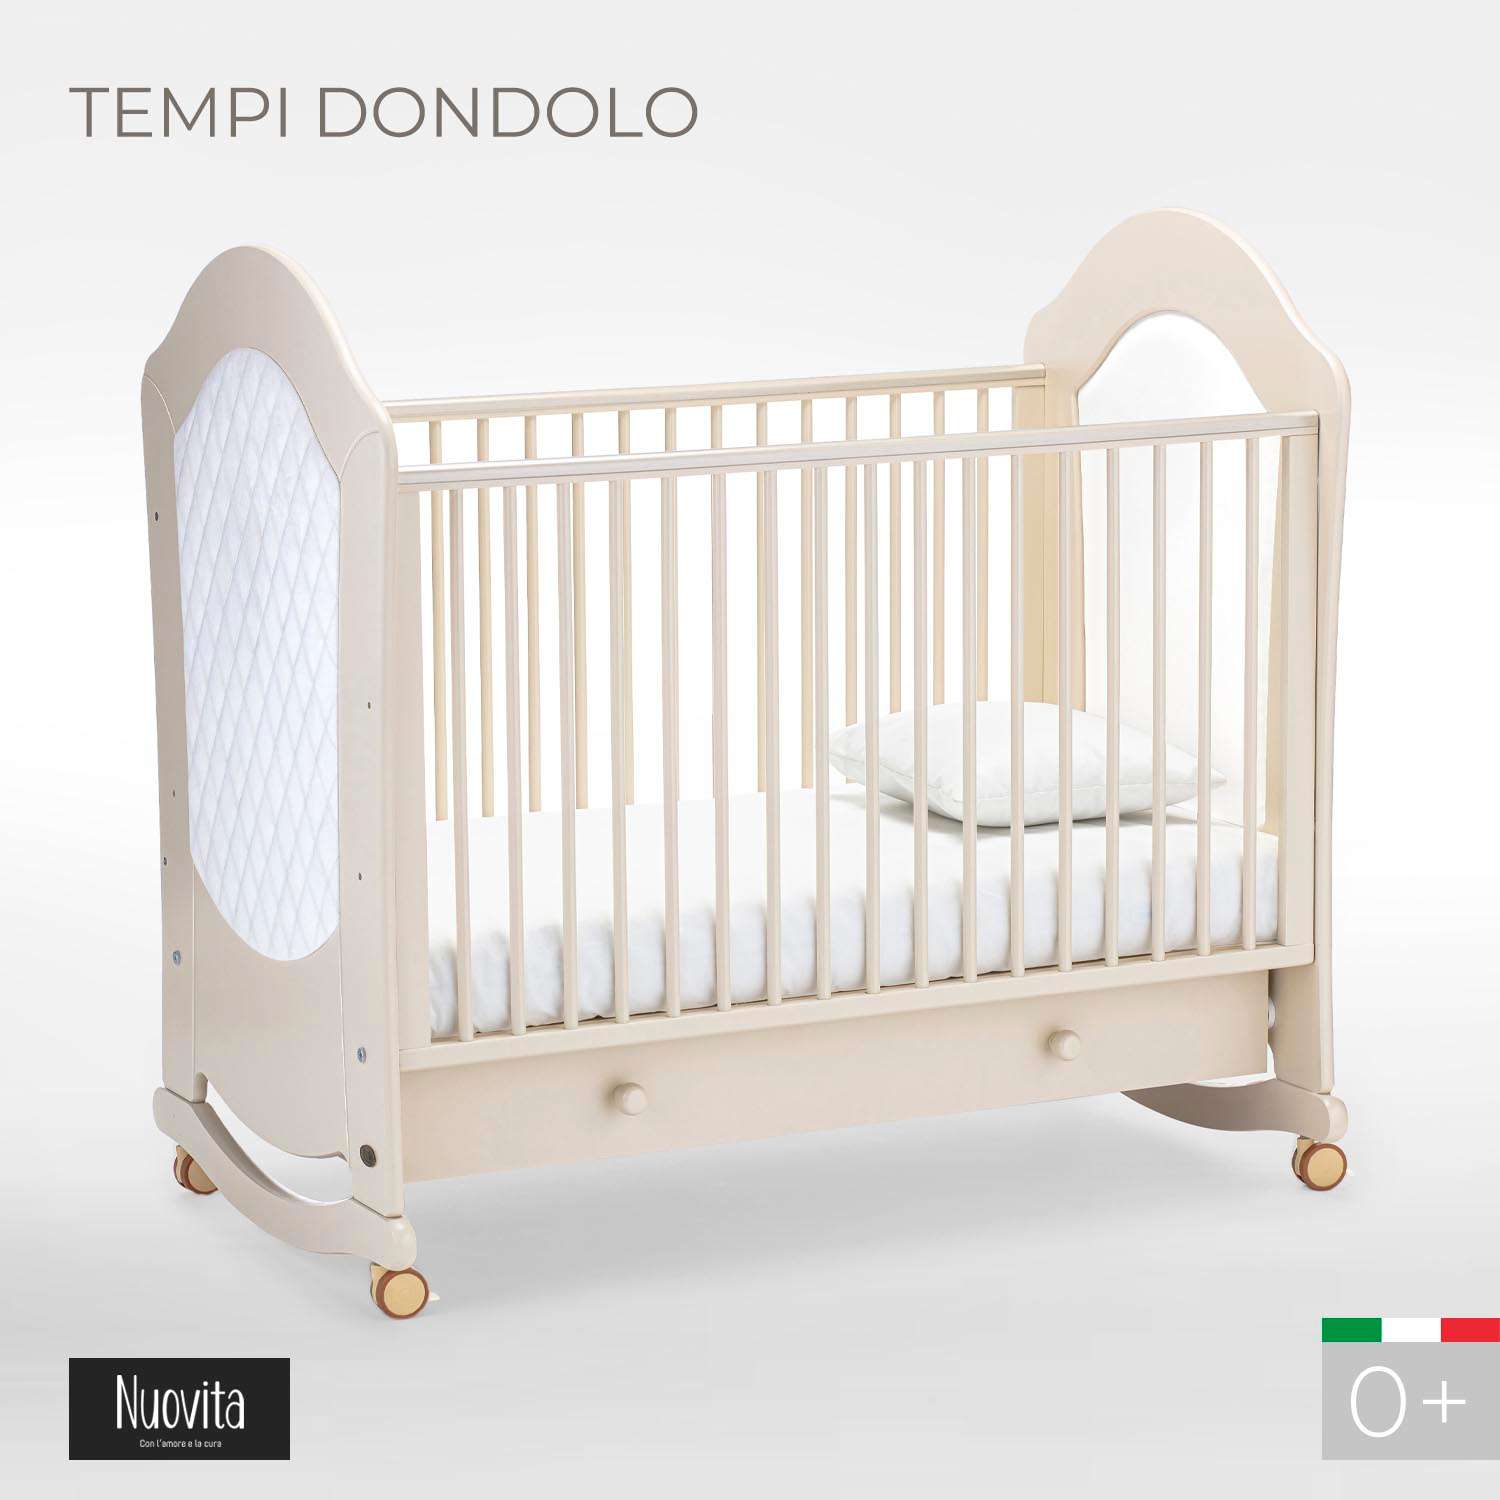 Детская кроватка Nuovita Tempi dondolo прямоугольная, (слоновая кость) - фото 2